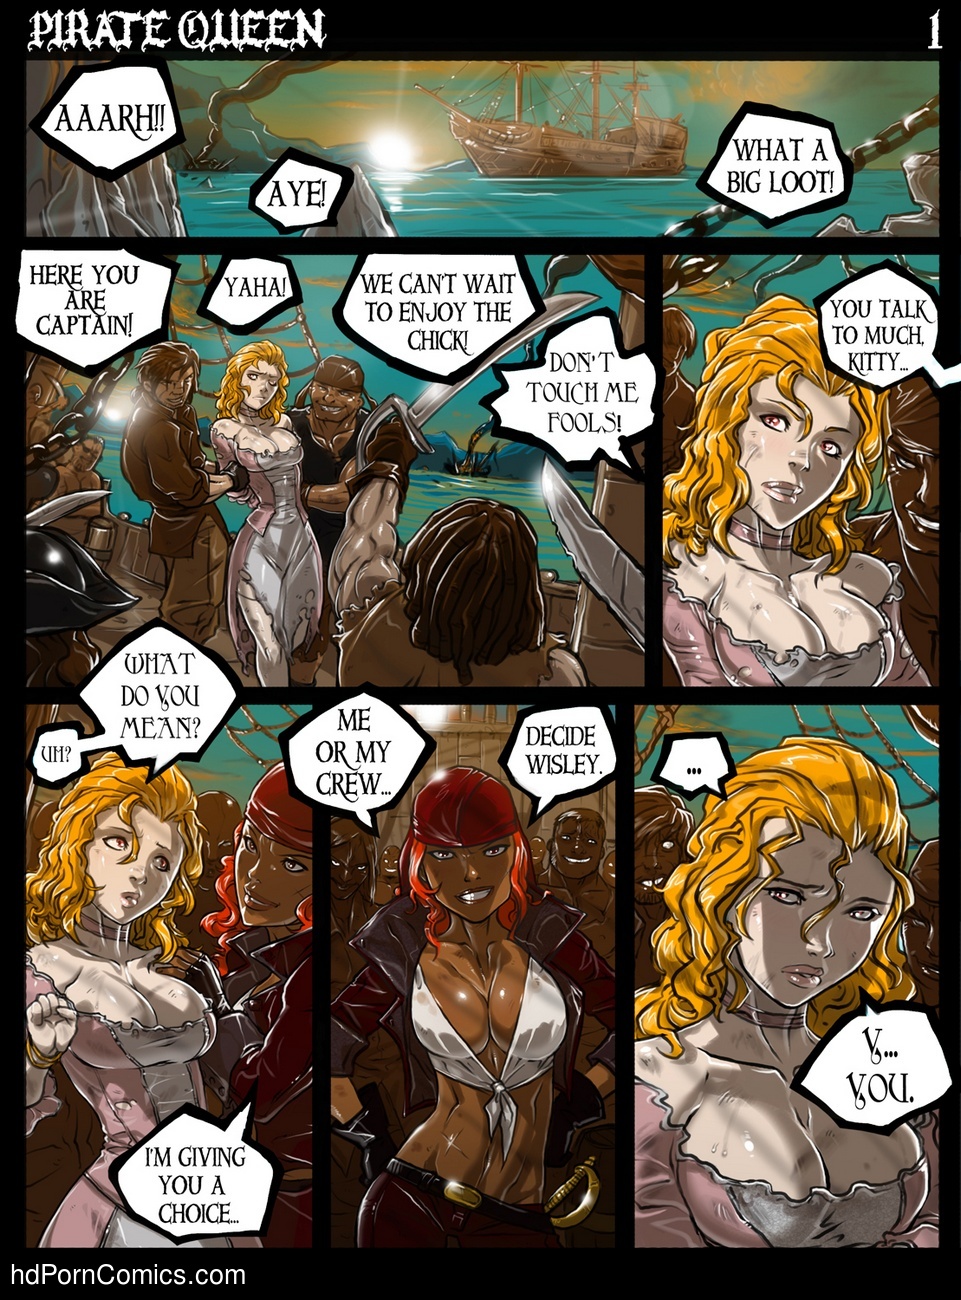 961px x 1300px - Pirate Queen Sex Comic â€“ HD Porn Comics